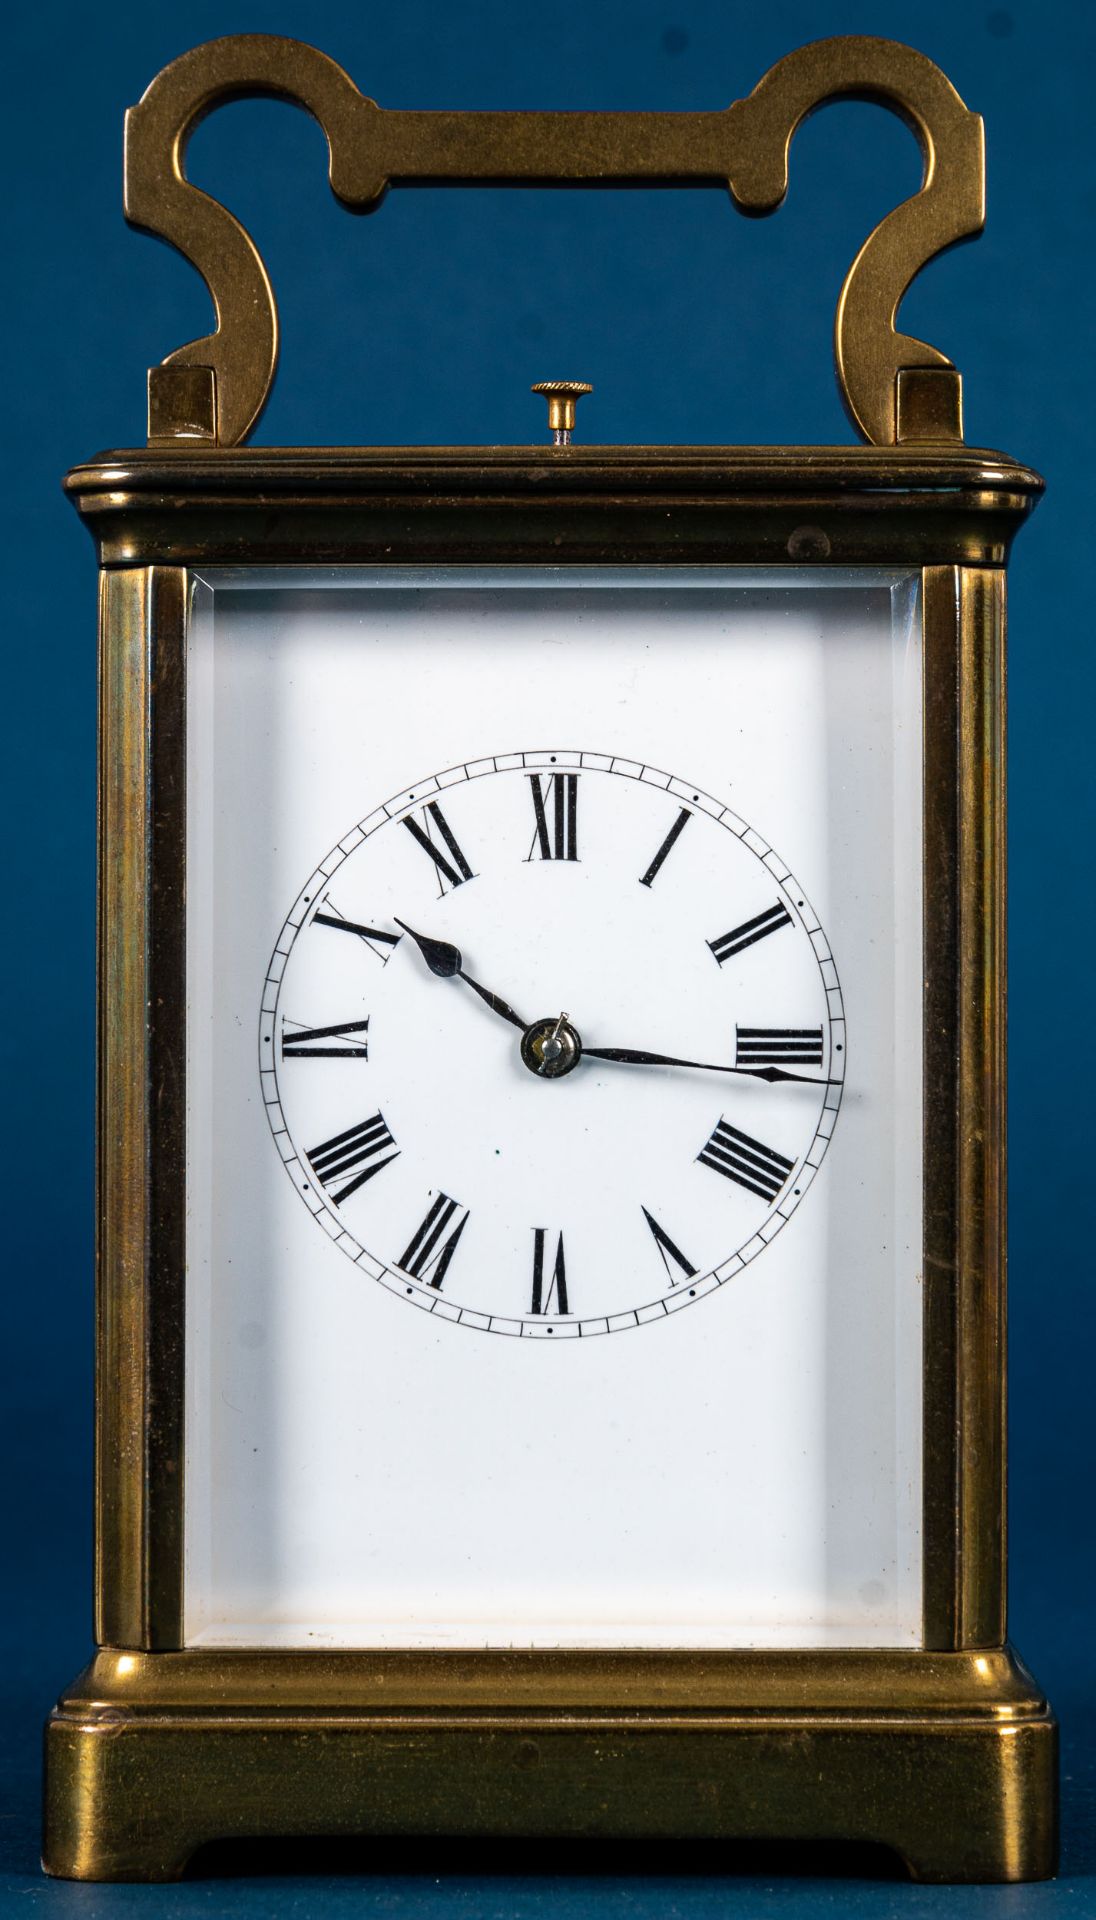 Antike Reiseuhr um 1900, sogenannte "Carriage - Clock", voll verglastes schwere